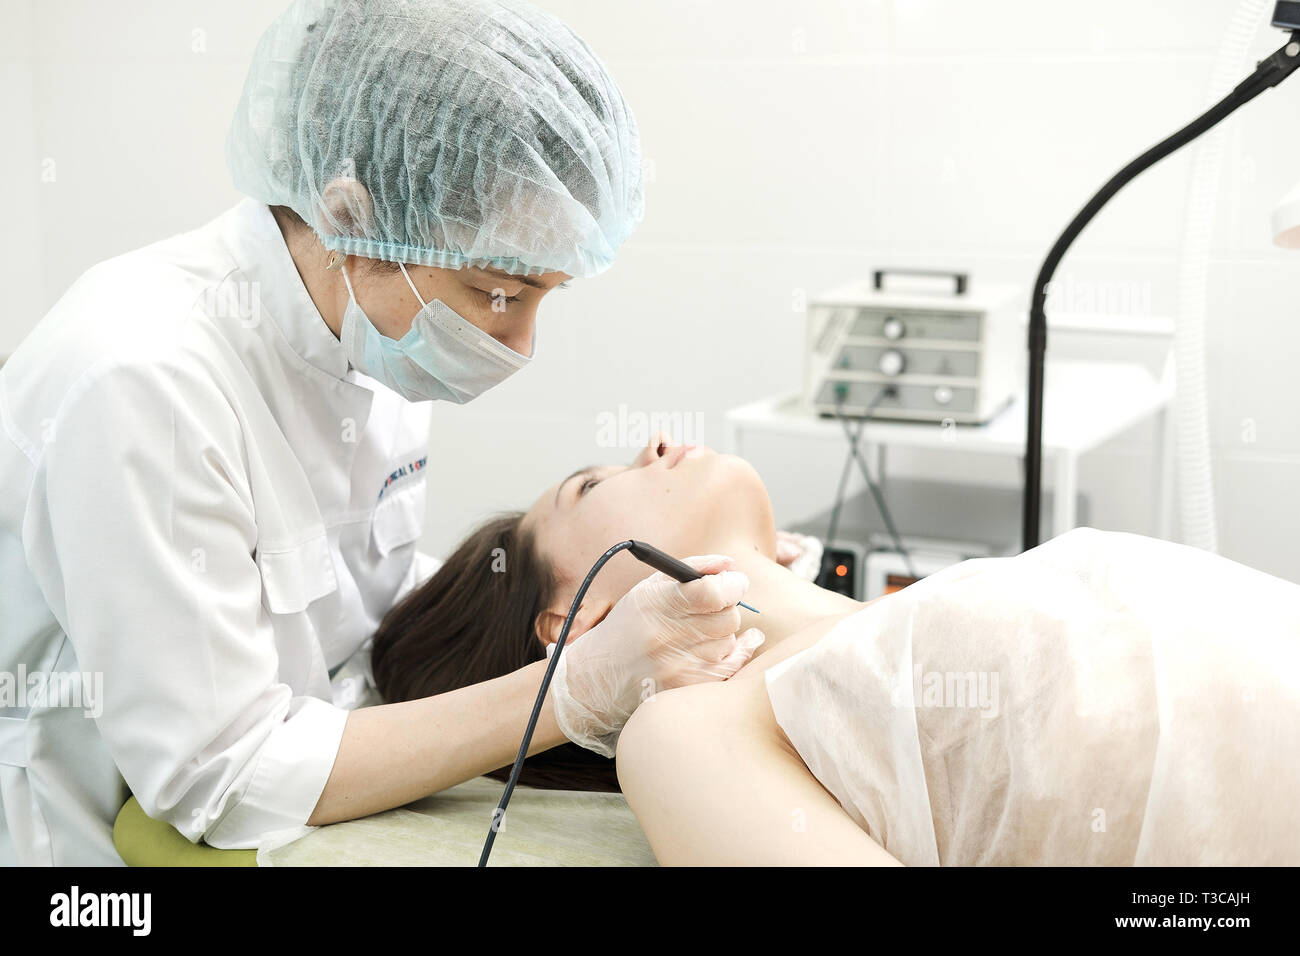 Medizinische Behandlung Entfernung von muttermal vom Hals des weiblichen Patienten. Weibliche Dermatologe Chirurg mit einem professionellen Elektrokauter für das Entfernen der Maulwurf. Stockfoto